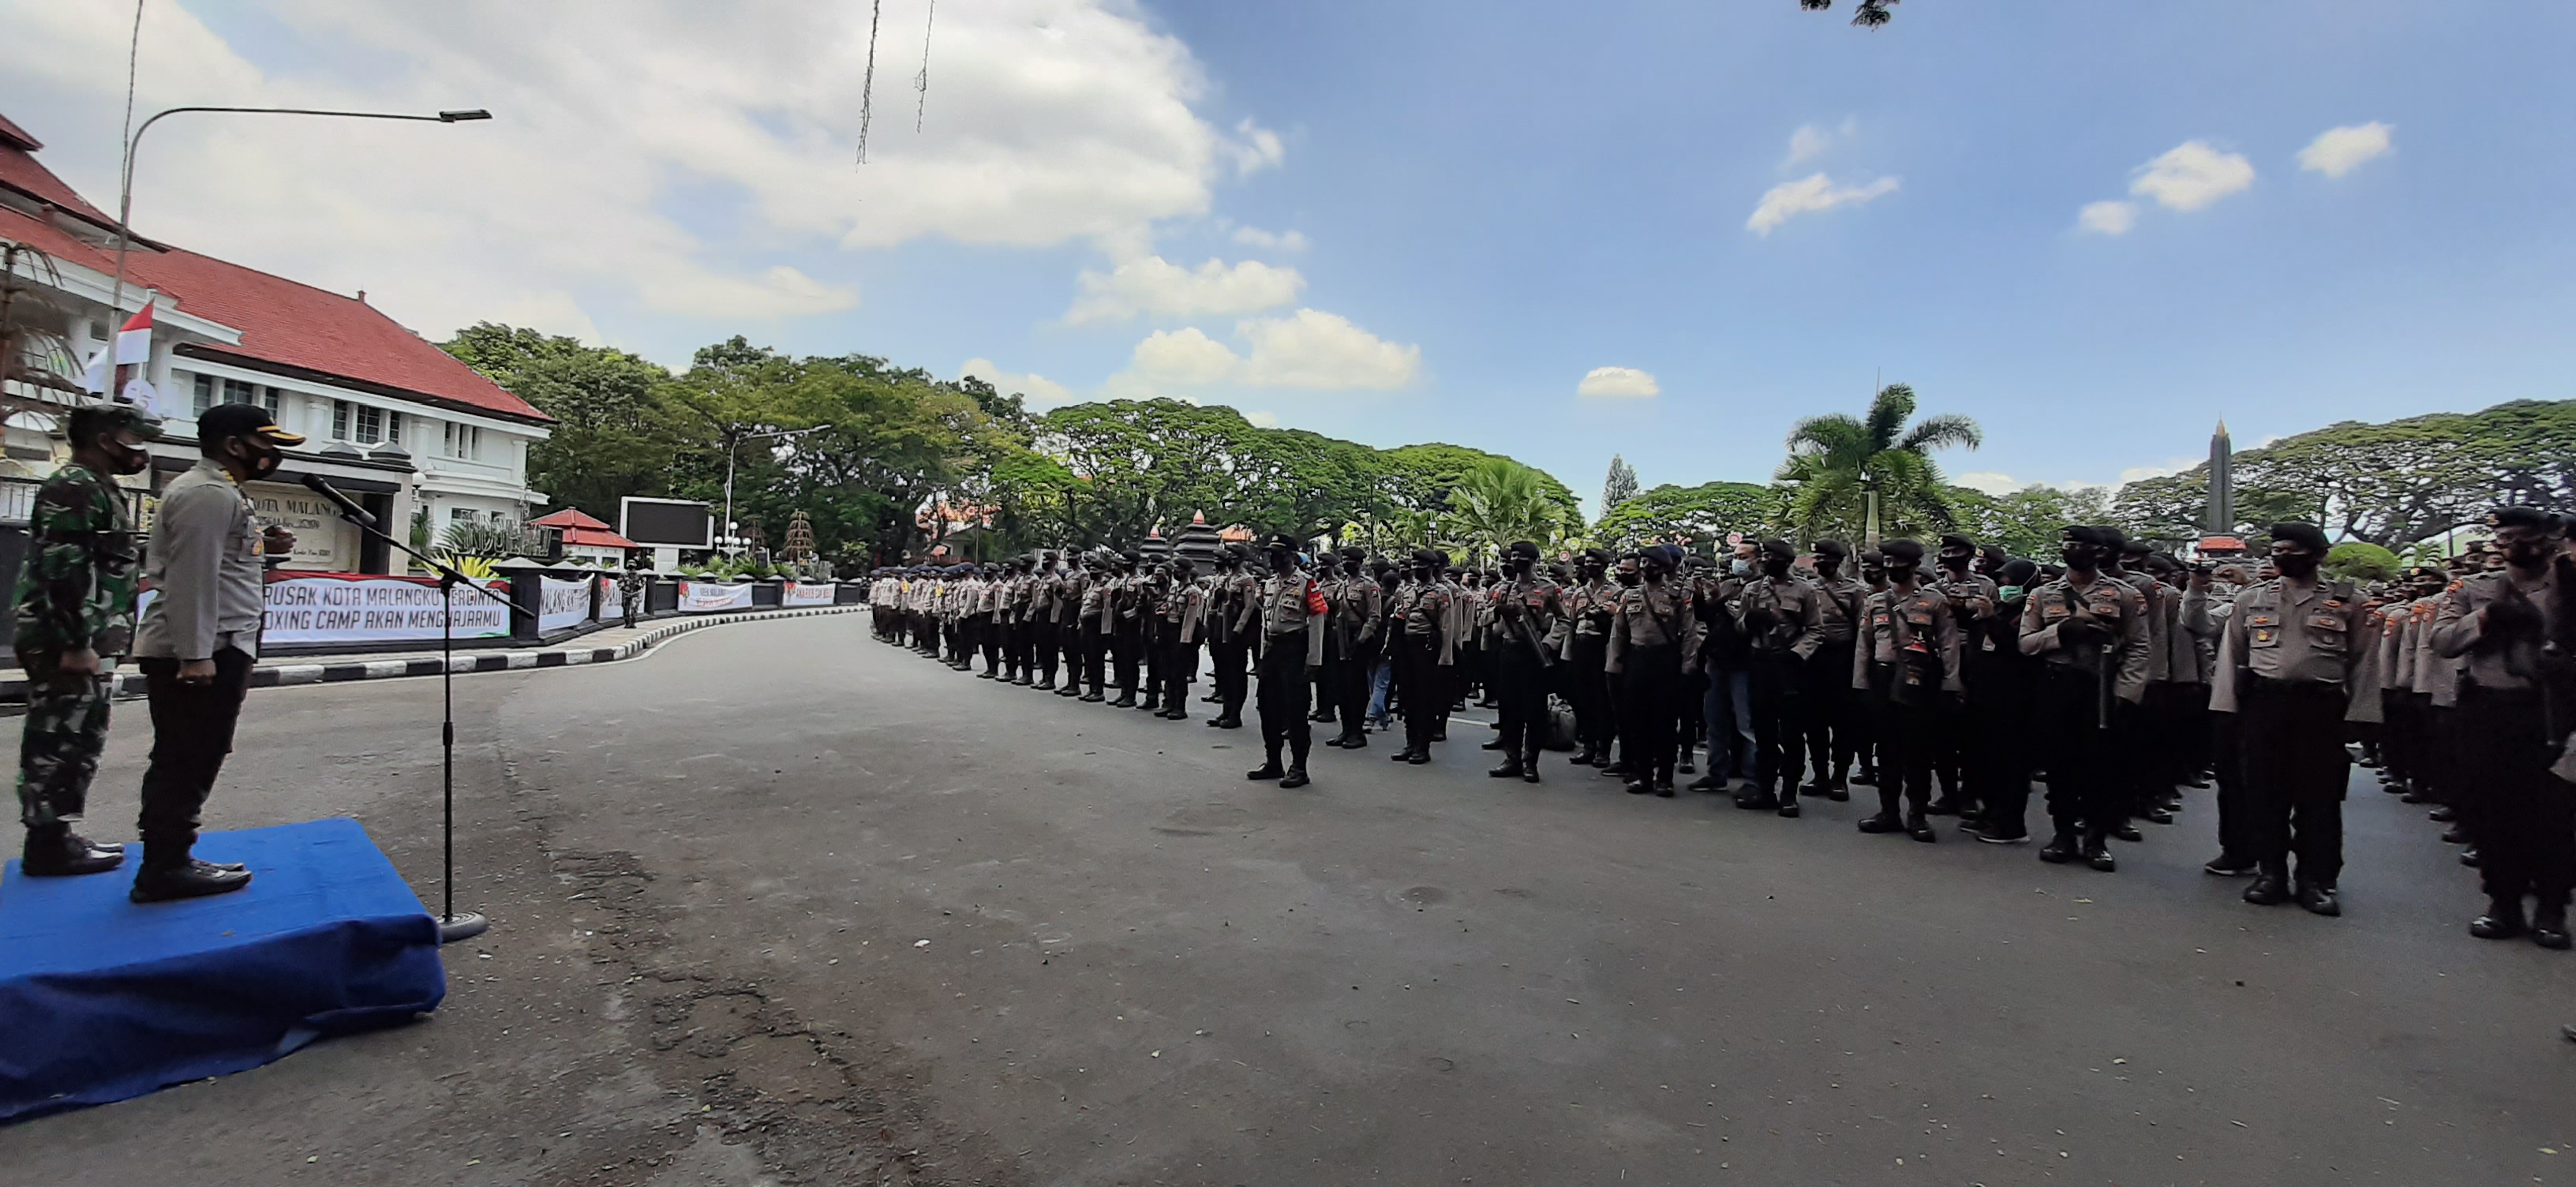 Gedung Balai Kota dan DPRD Malang Belum Didatangi Pendemo, Ribuan Polisi Siaga